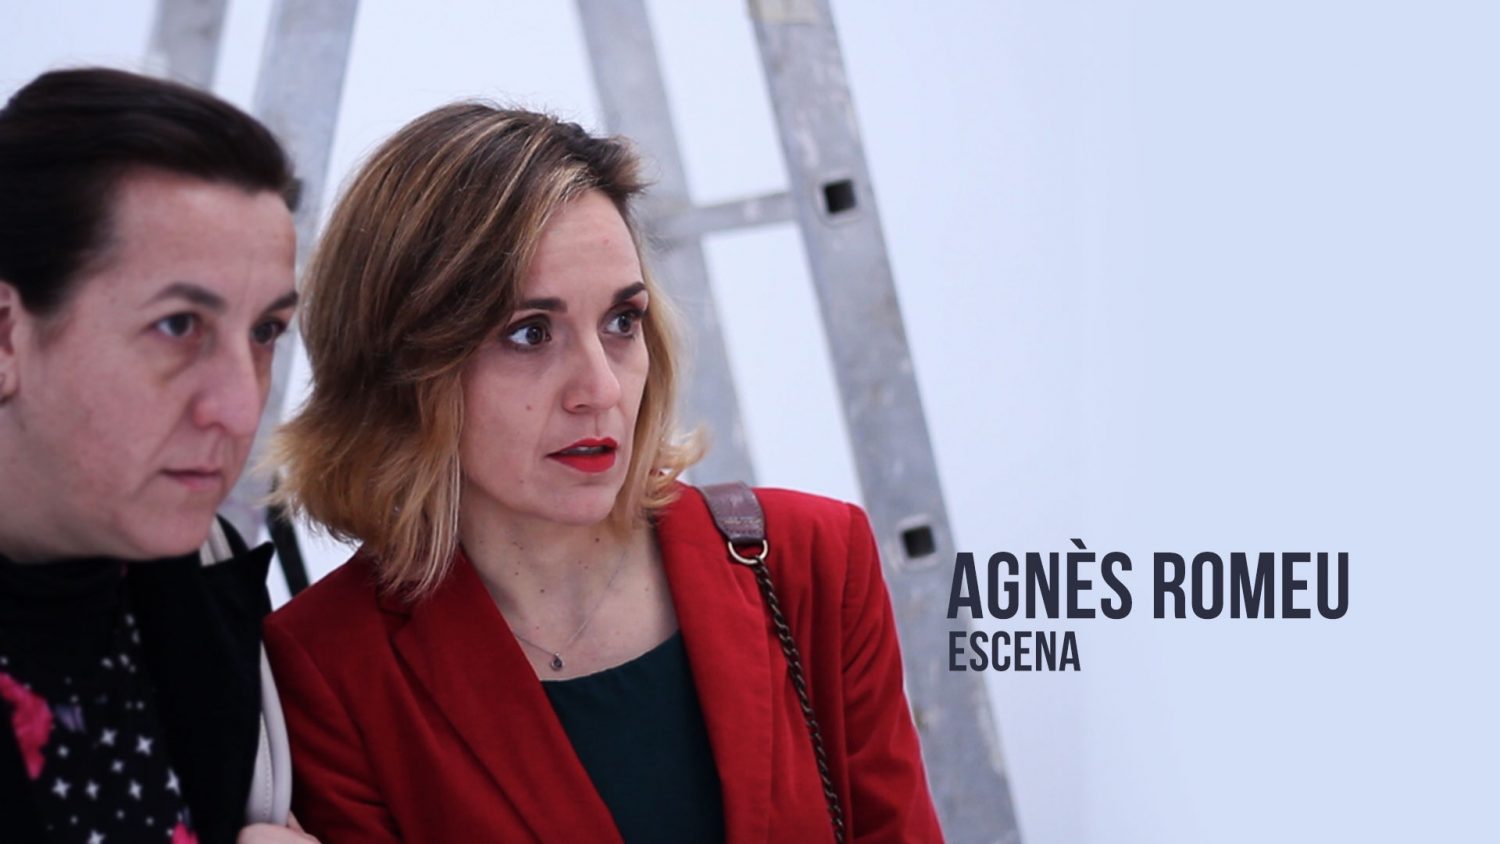 Agnès Romeu - Escena Actriz